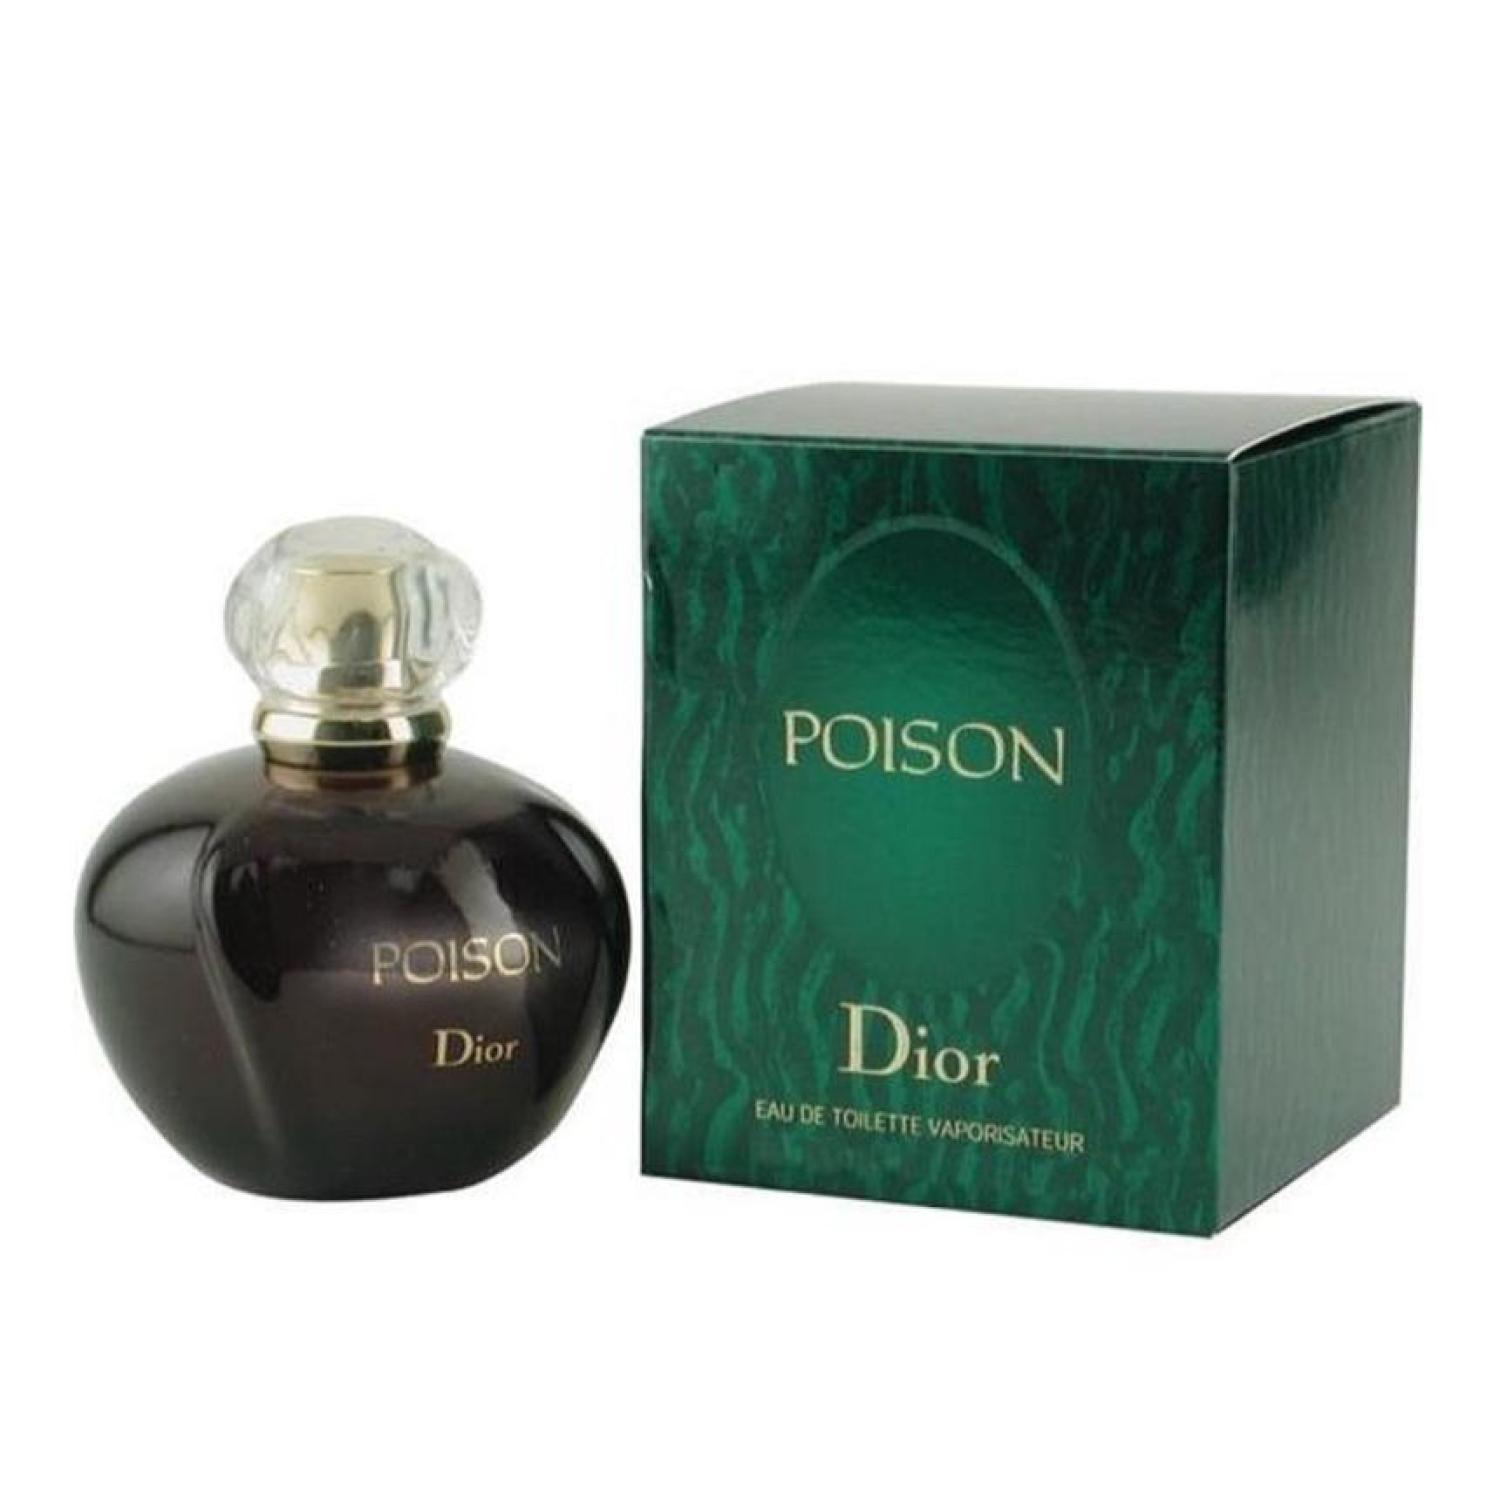 Poison туалетная вода. Christian Dior "Poison" 100 ml. Dior Poison 100 ml. Christian Dior Poison EDT (W) 100ml. Dior Poison туалетная вода 100.